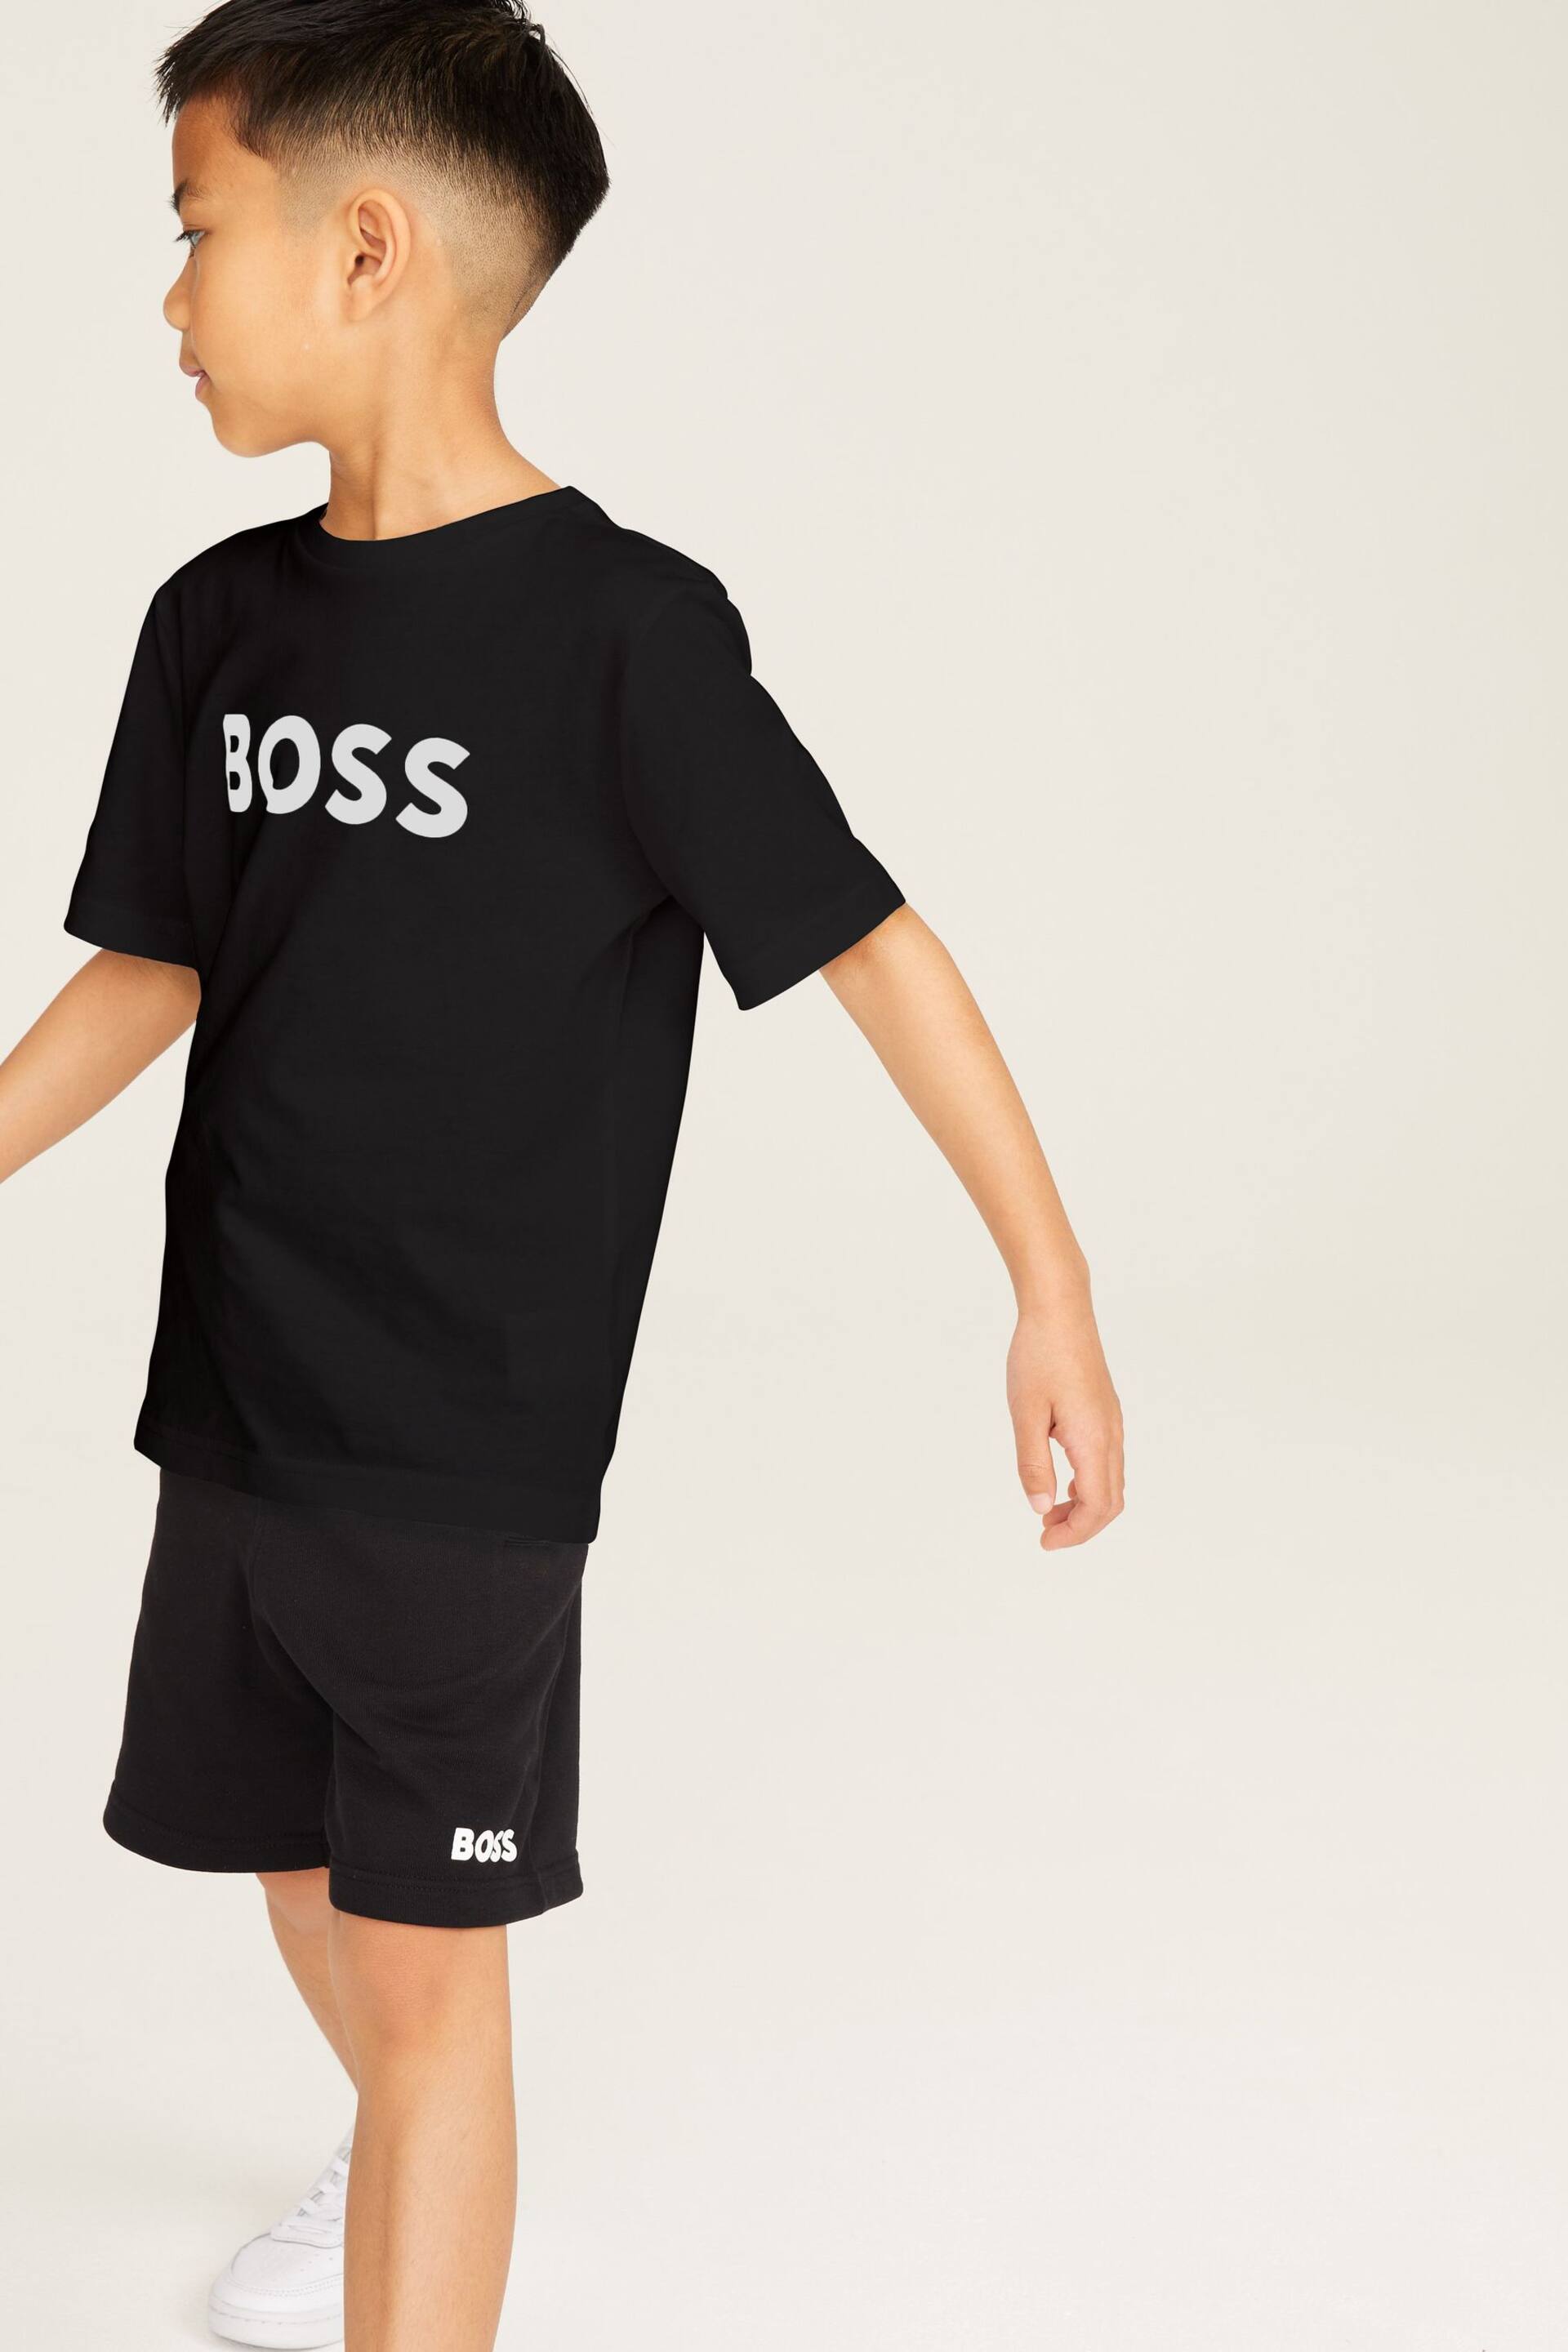 BOSS Black Short Sleeved Logo T-Shirt - Image 1 of 3